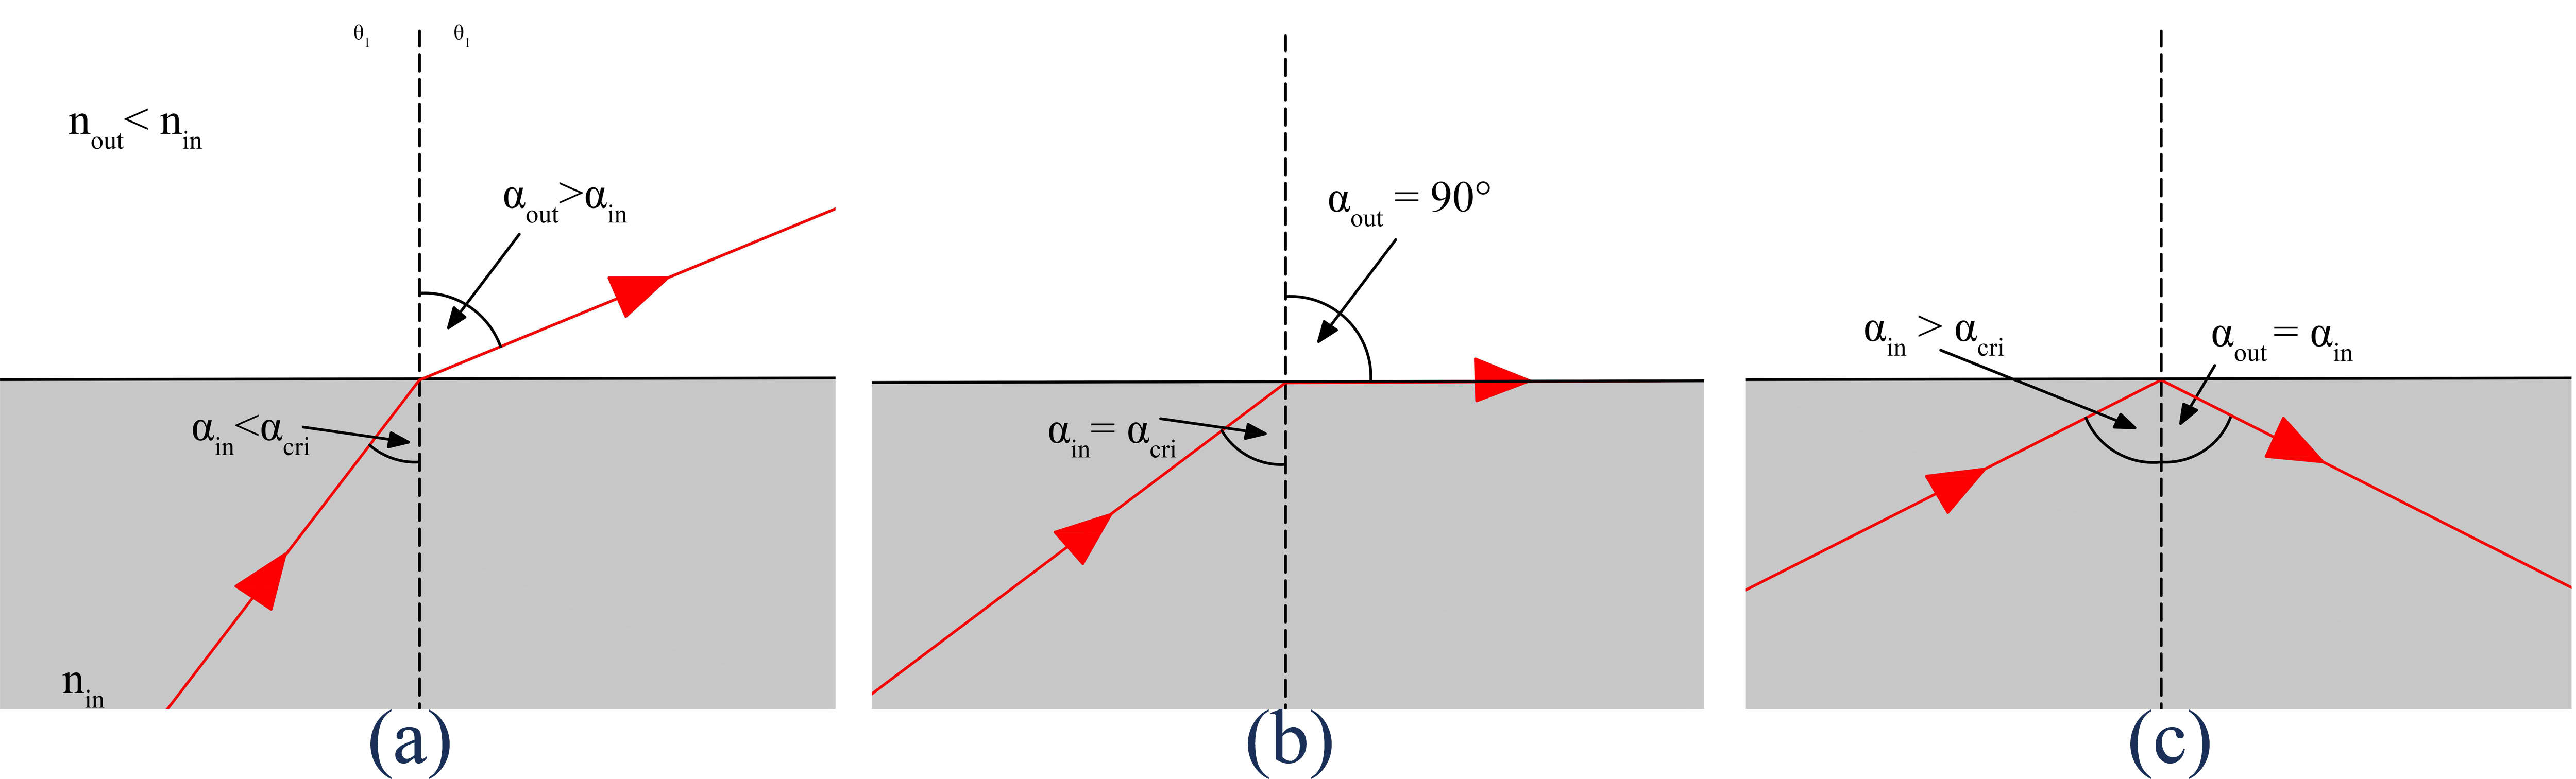 Incidence angle and critical angle: (a) incidence angle less than the critical angle (b) incidence angle equal to the critical angle, and (c) incidence angle greater than the critical angle.